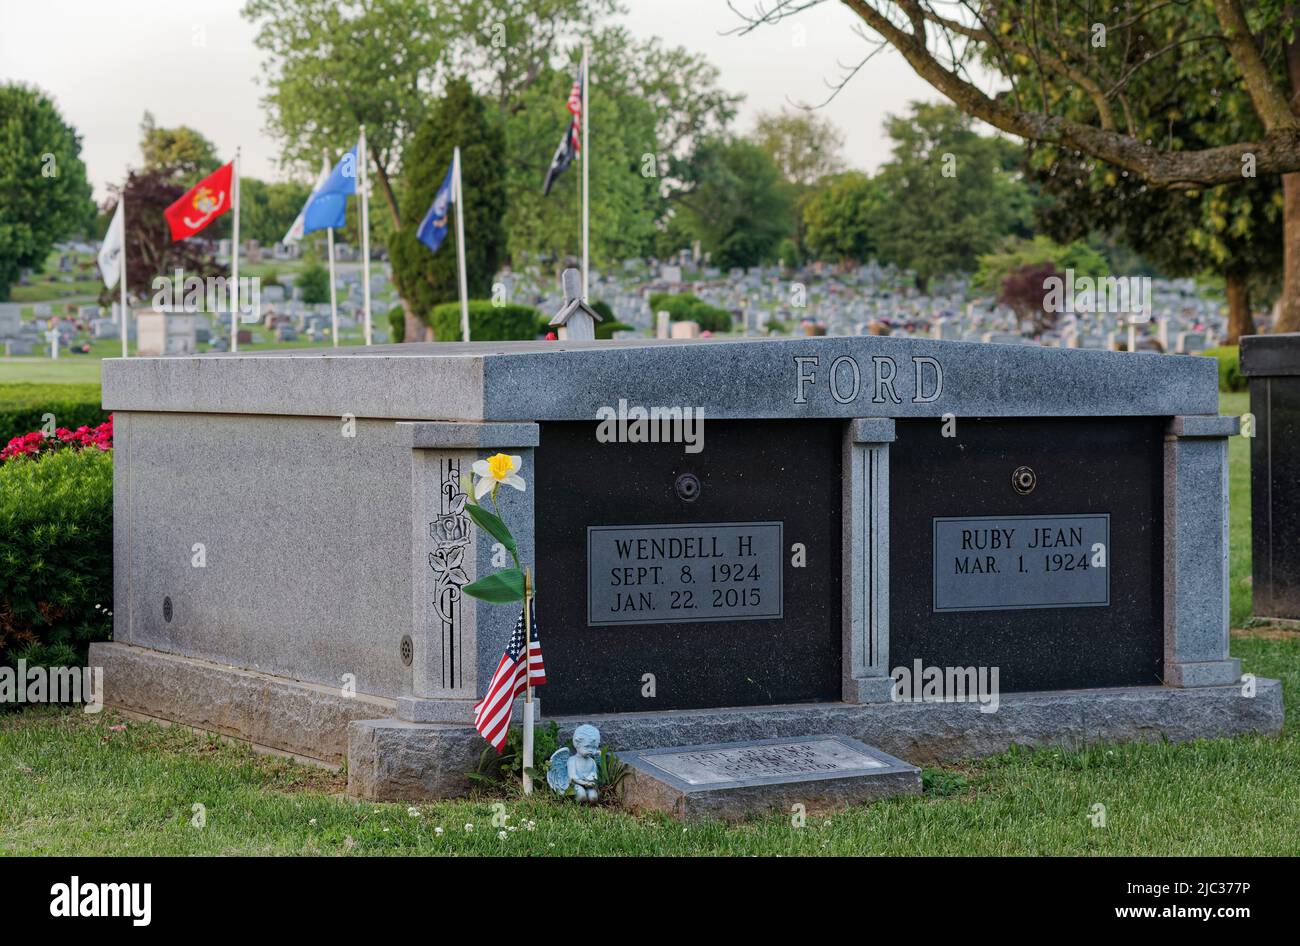 Un drapeau américain et une petite statue de chérubin ornent la tombe de l'ancien sénateur des États-Unis Wendell Hampton Ford (1924-2015) le jour du souvenir, lundi, 30 mai 2022 au cimetière et mausolée de Rosehill-Elmwood à Owensboro, comté de Daviess, KY, États-Unis. Ford était un vétéran qui a servi dans l'armée américaine pendant la Seconde Guerre mondiale puis la Garde nationale de l'armée du Kentucky avant de commencer une carrière politique Stored en 1965. (Photo APEX MediaWire par Billy Suratt) Banque D'Images